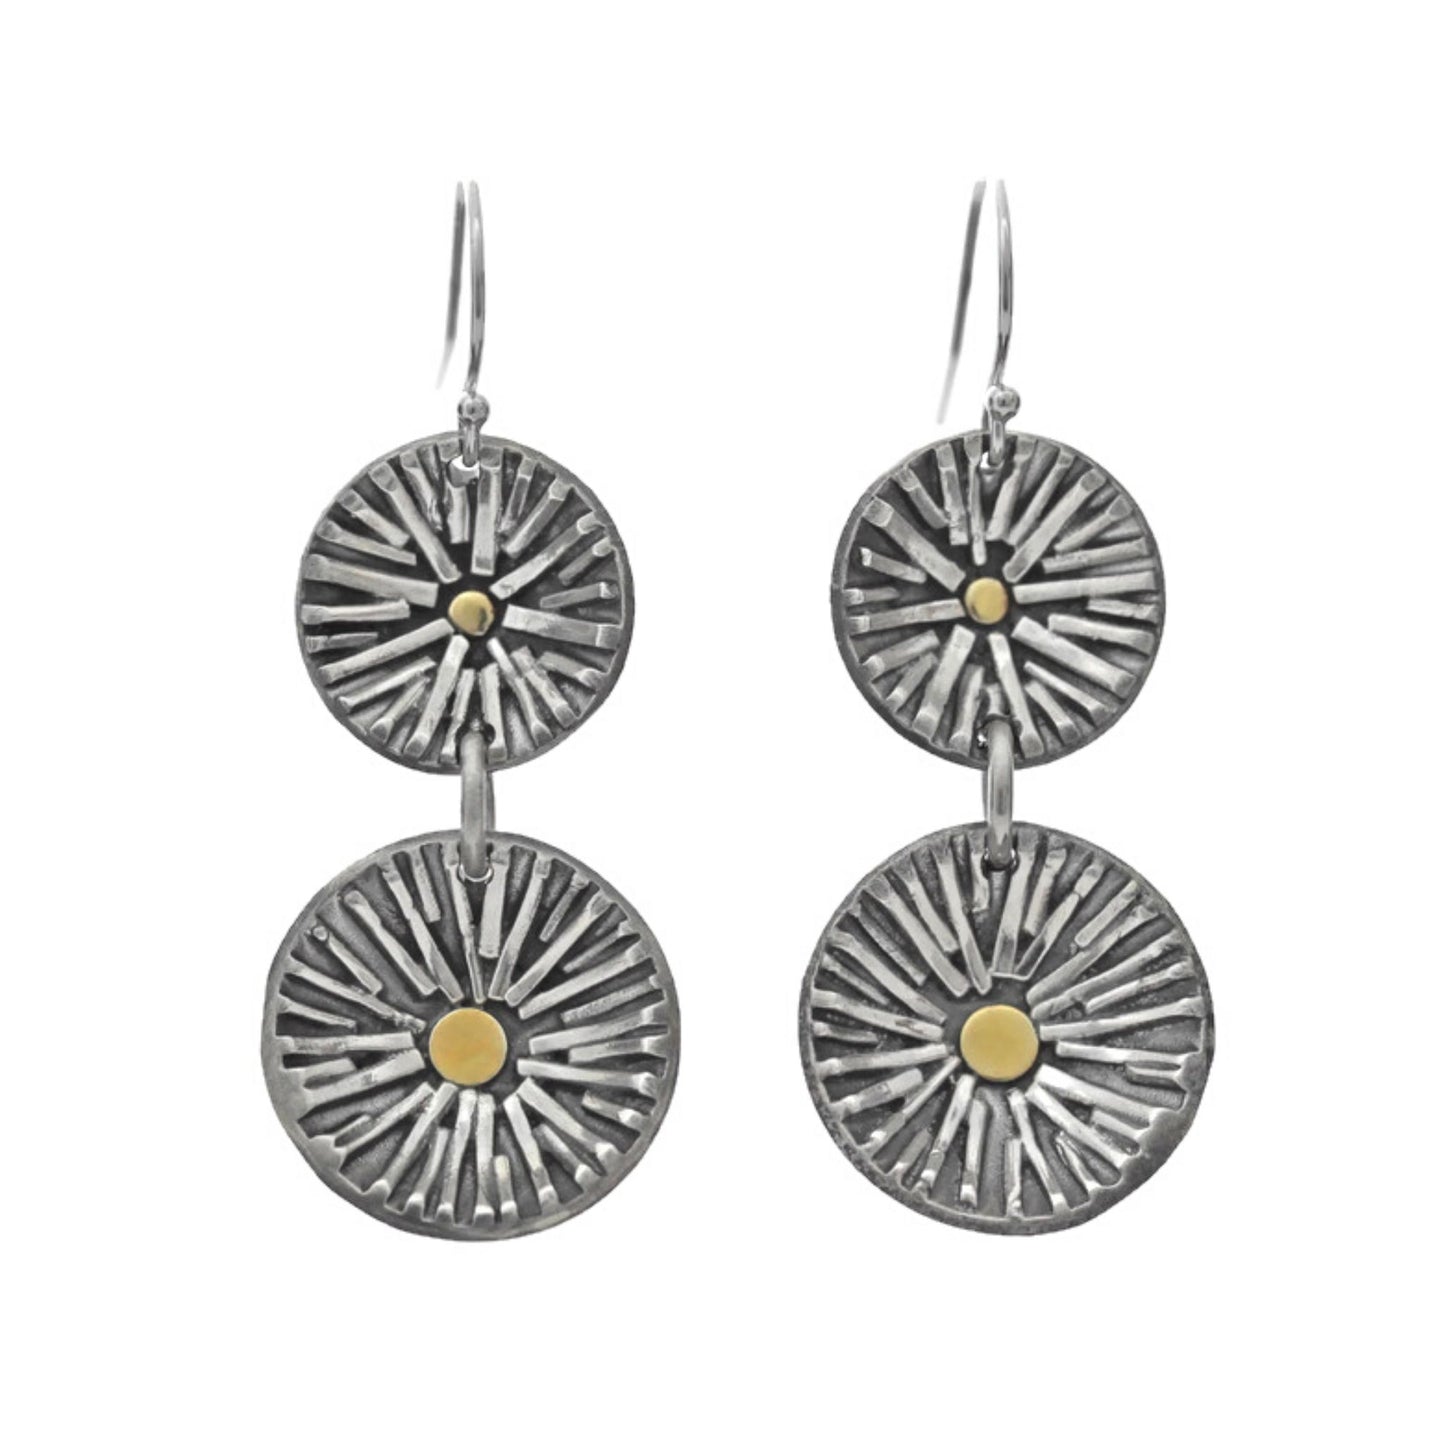 Silver double sun earrings by Jen Lesea Designs